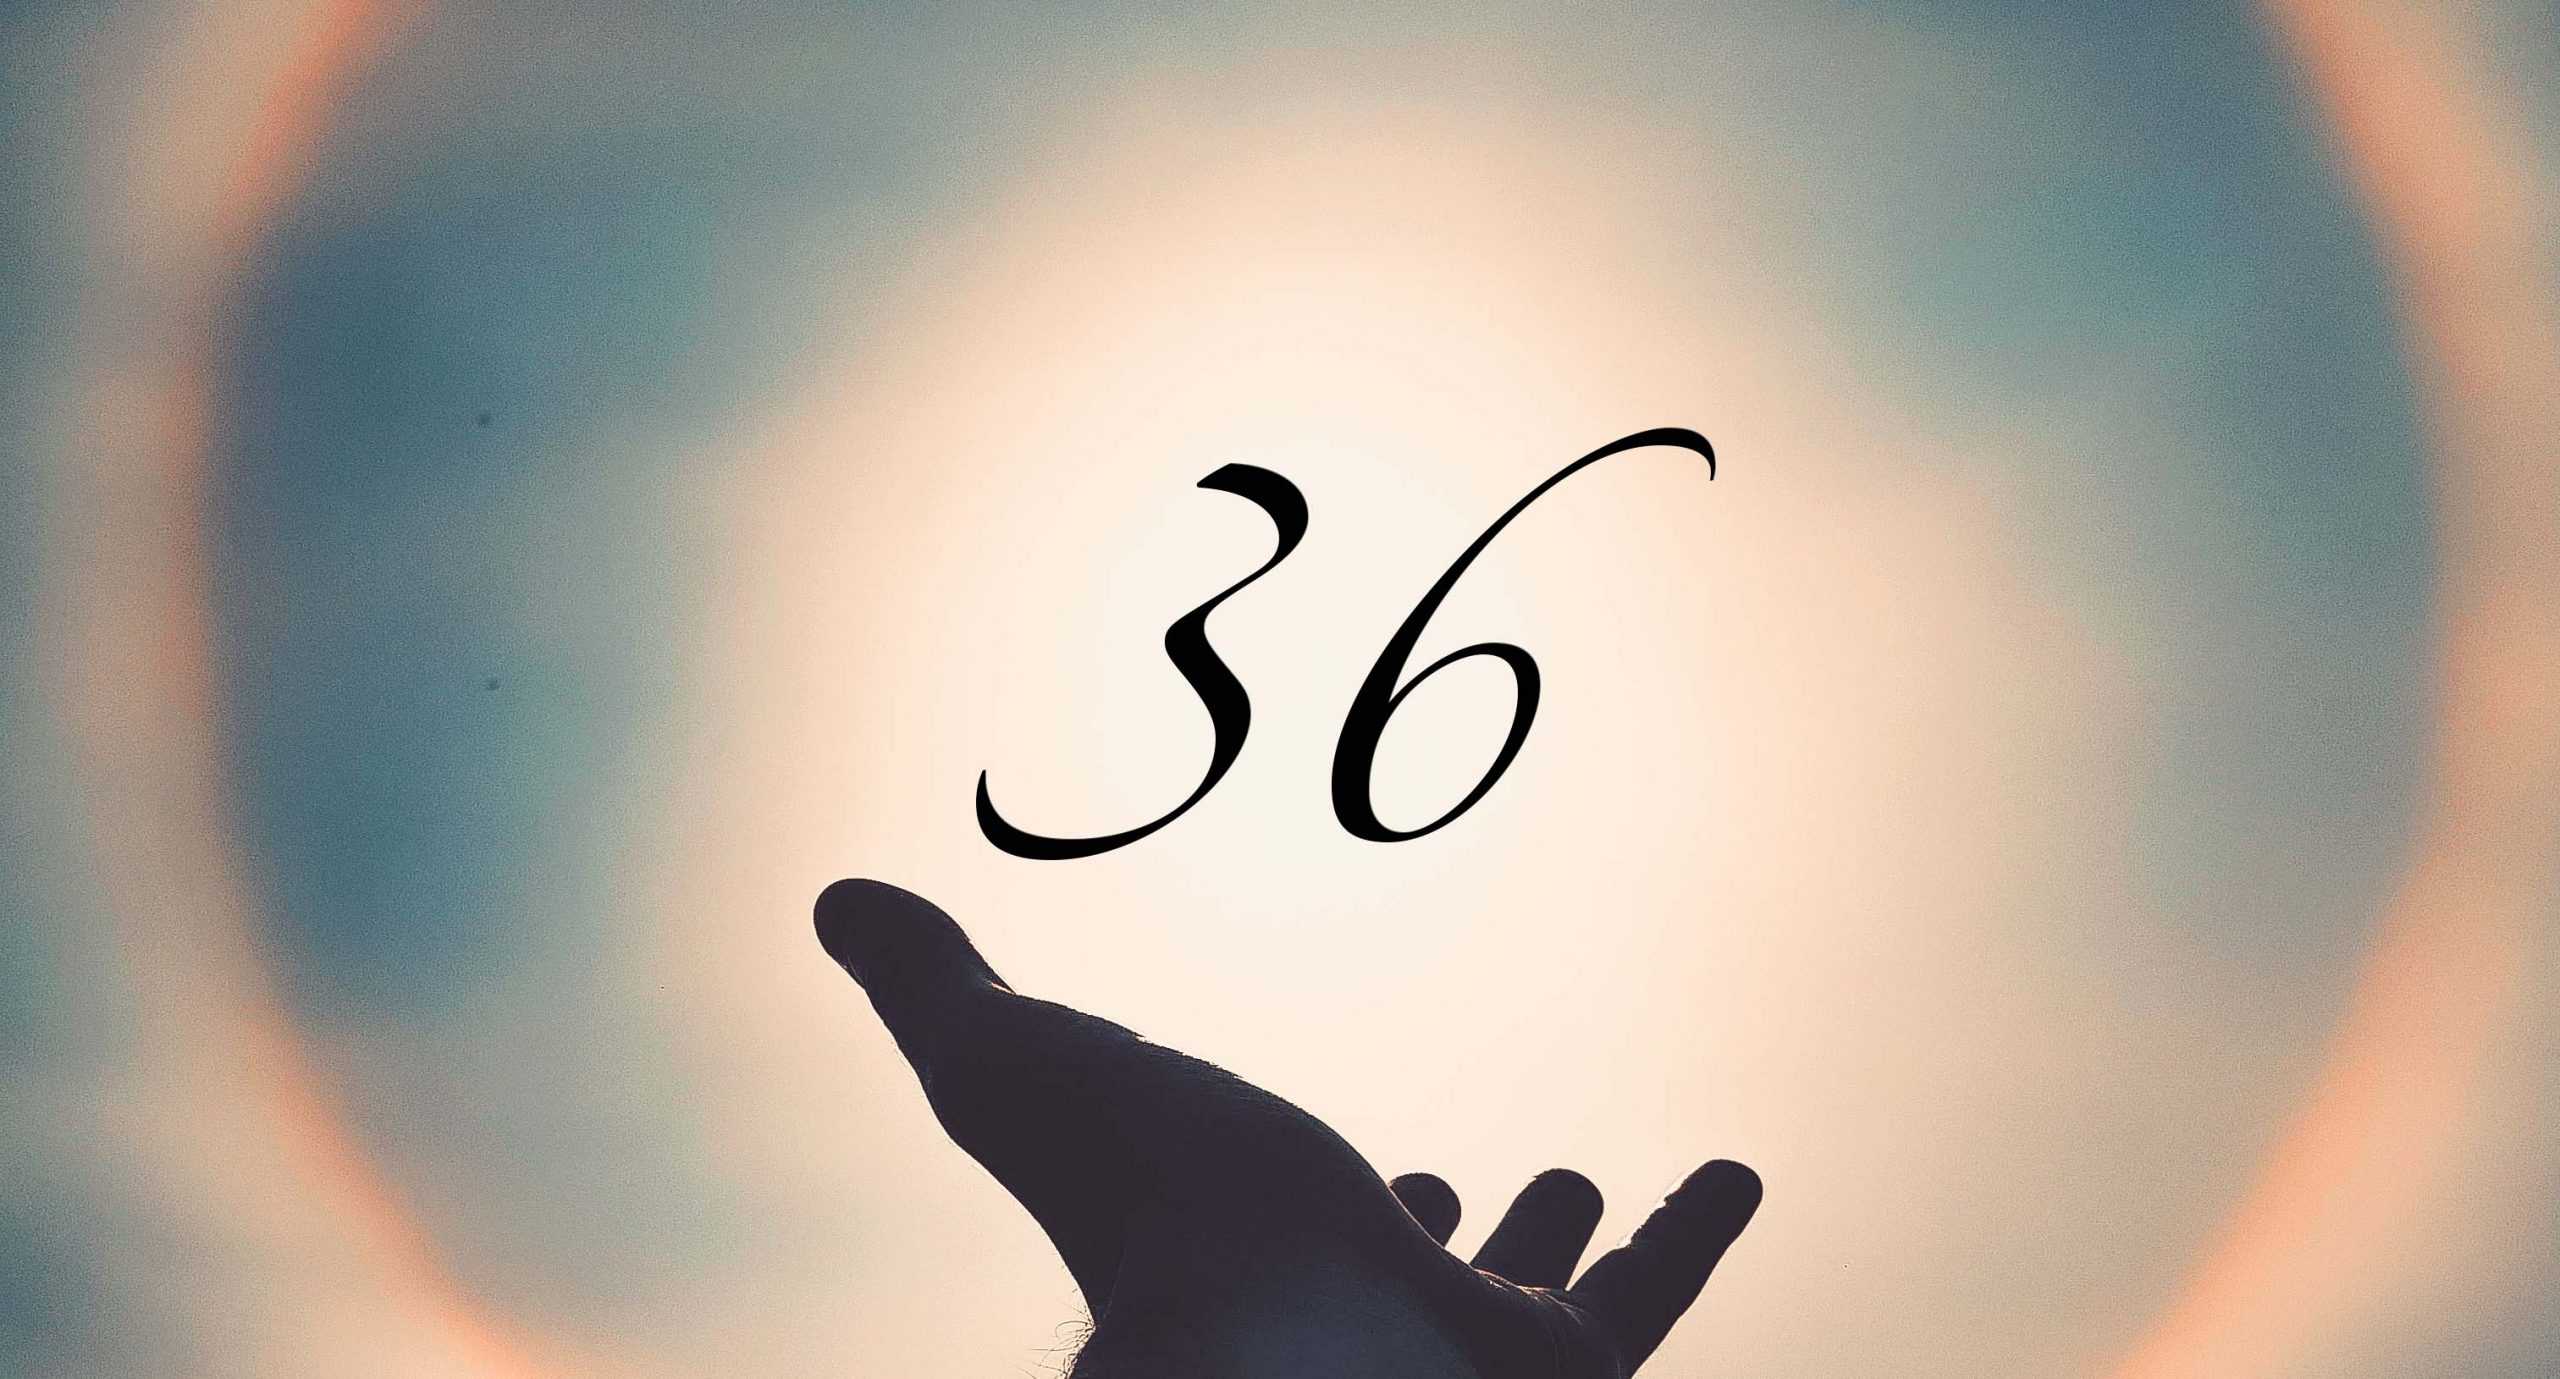 Signification du nombre 36